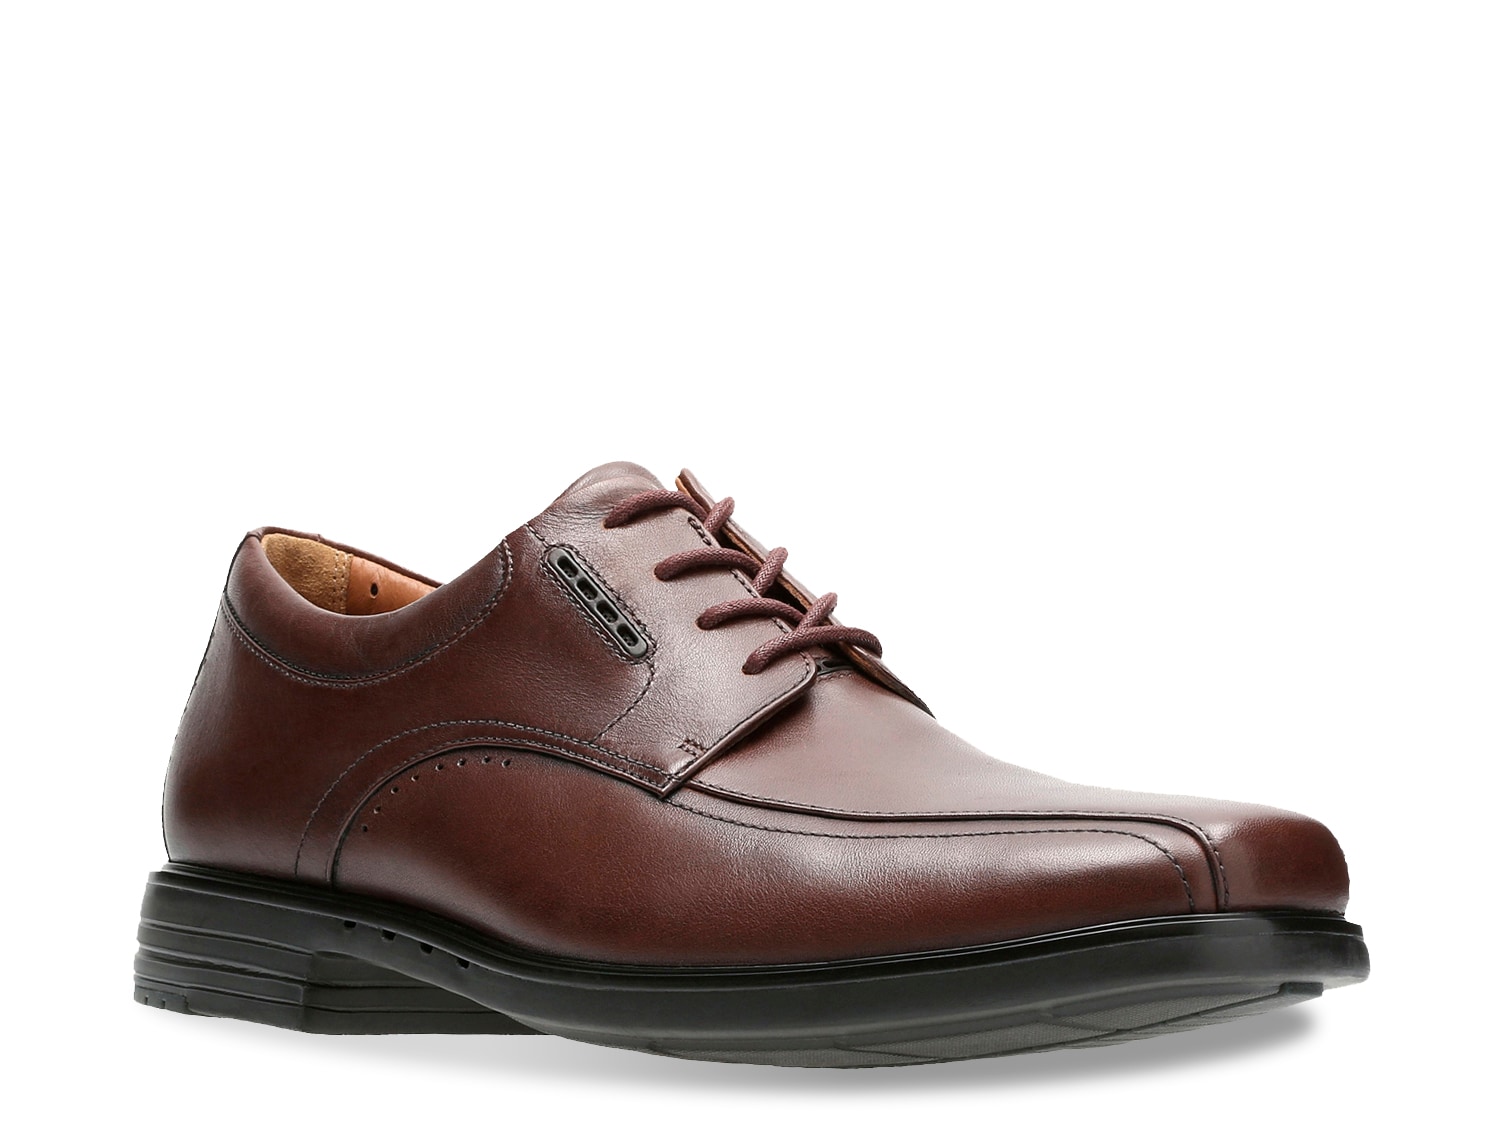 Men's Clarks Comfort Shoes | DSW